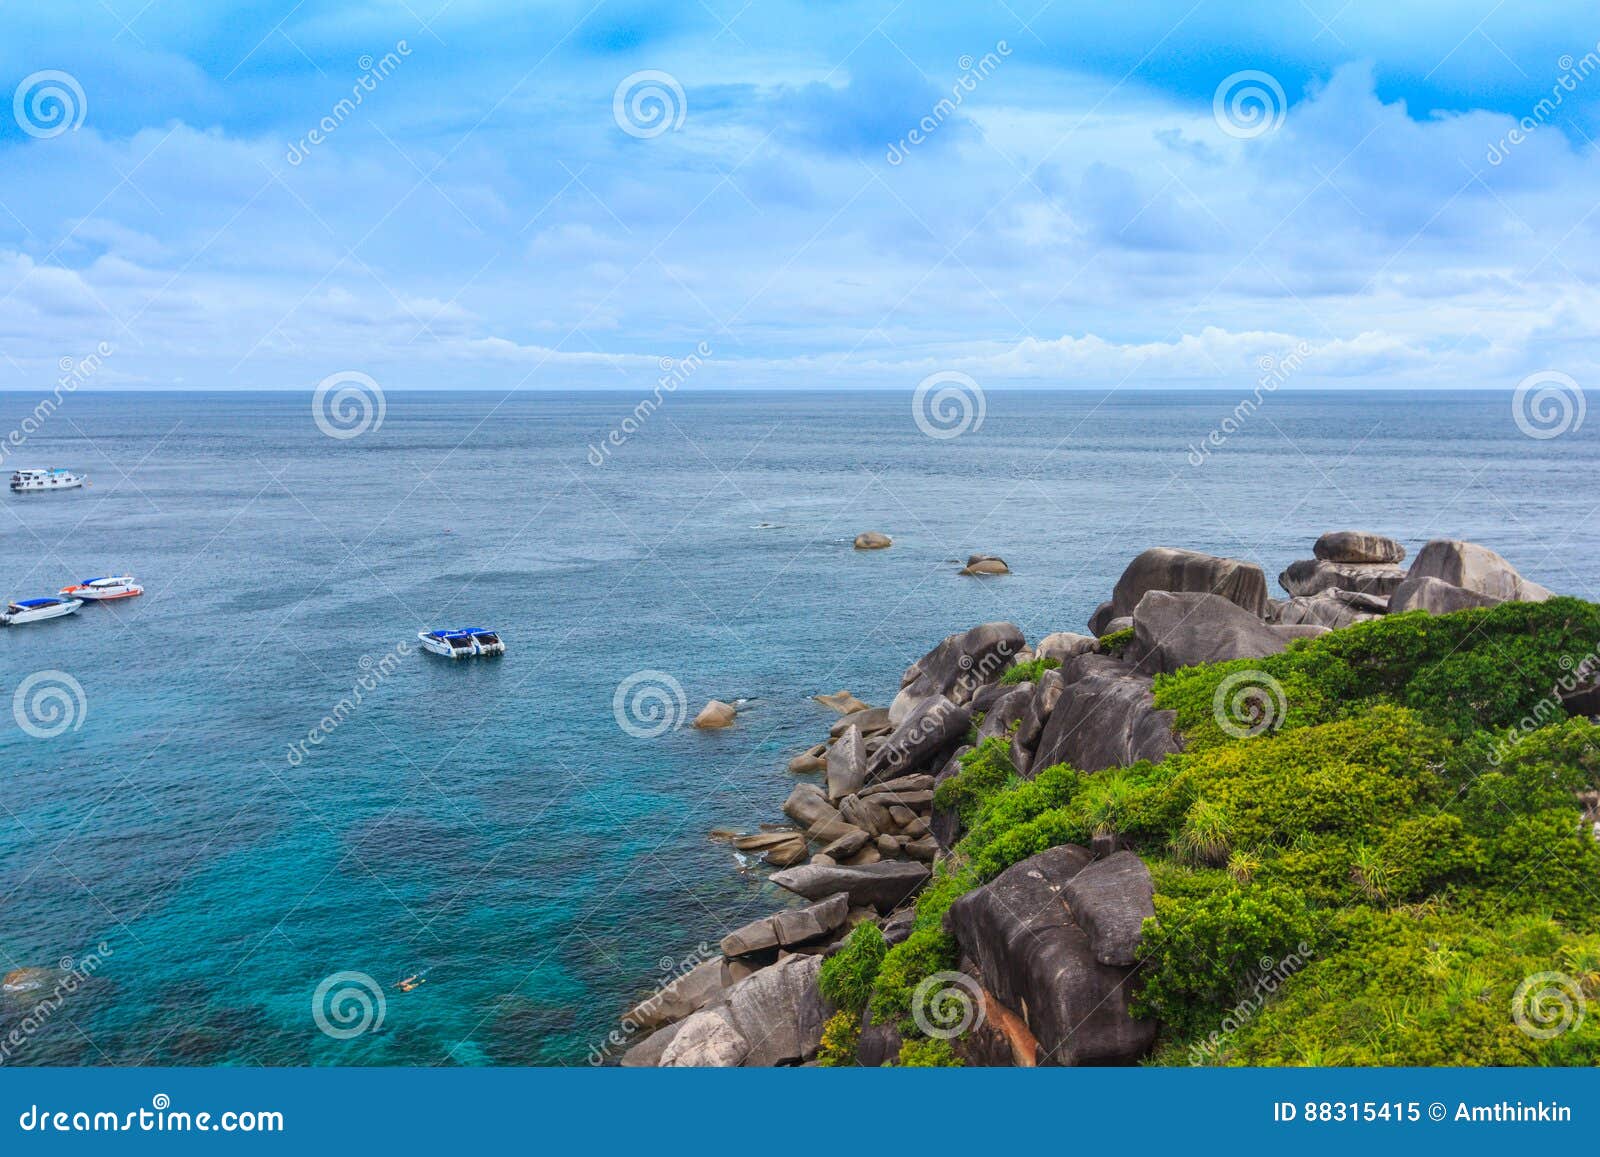 Beautiful Tropical Sea and Blue Sky of Similan Island, Phang-nga